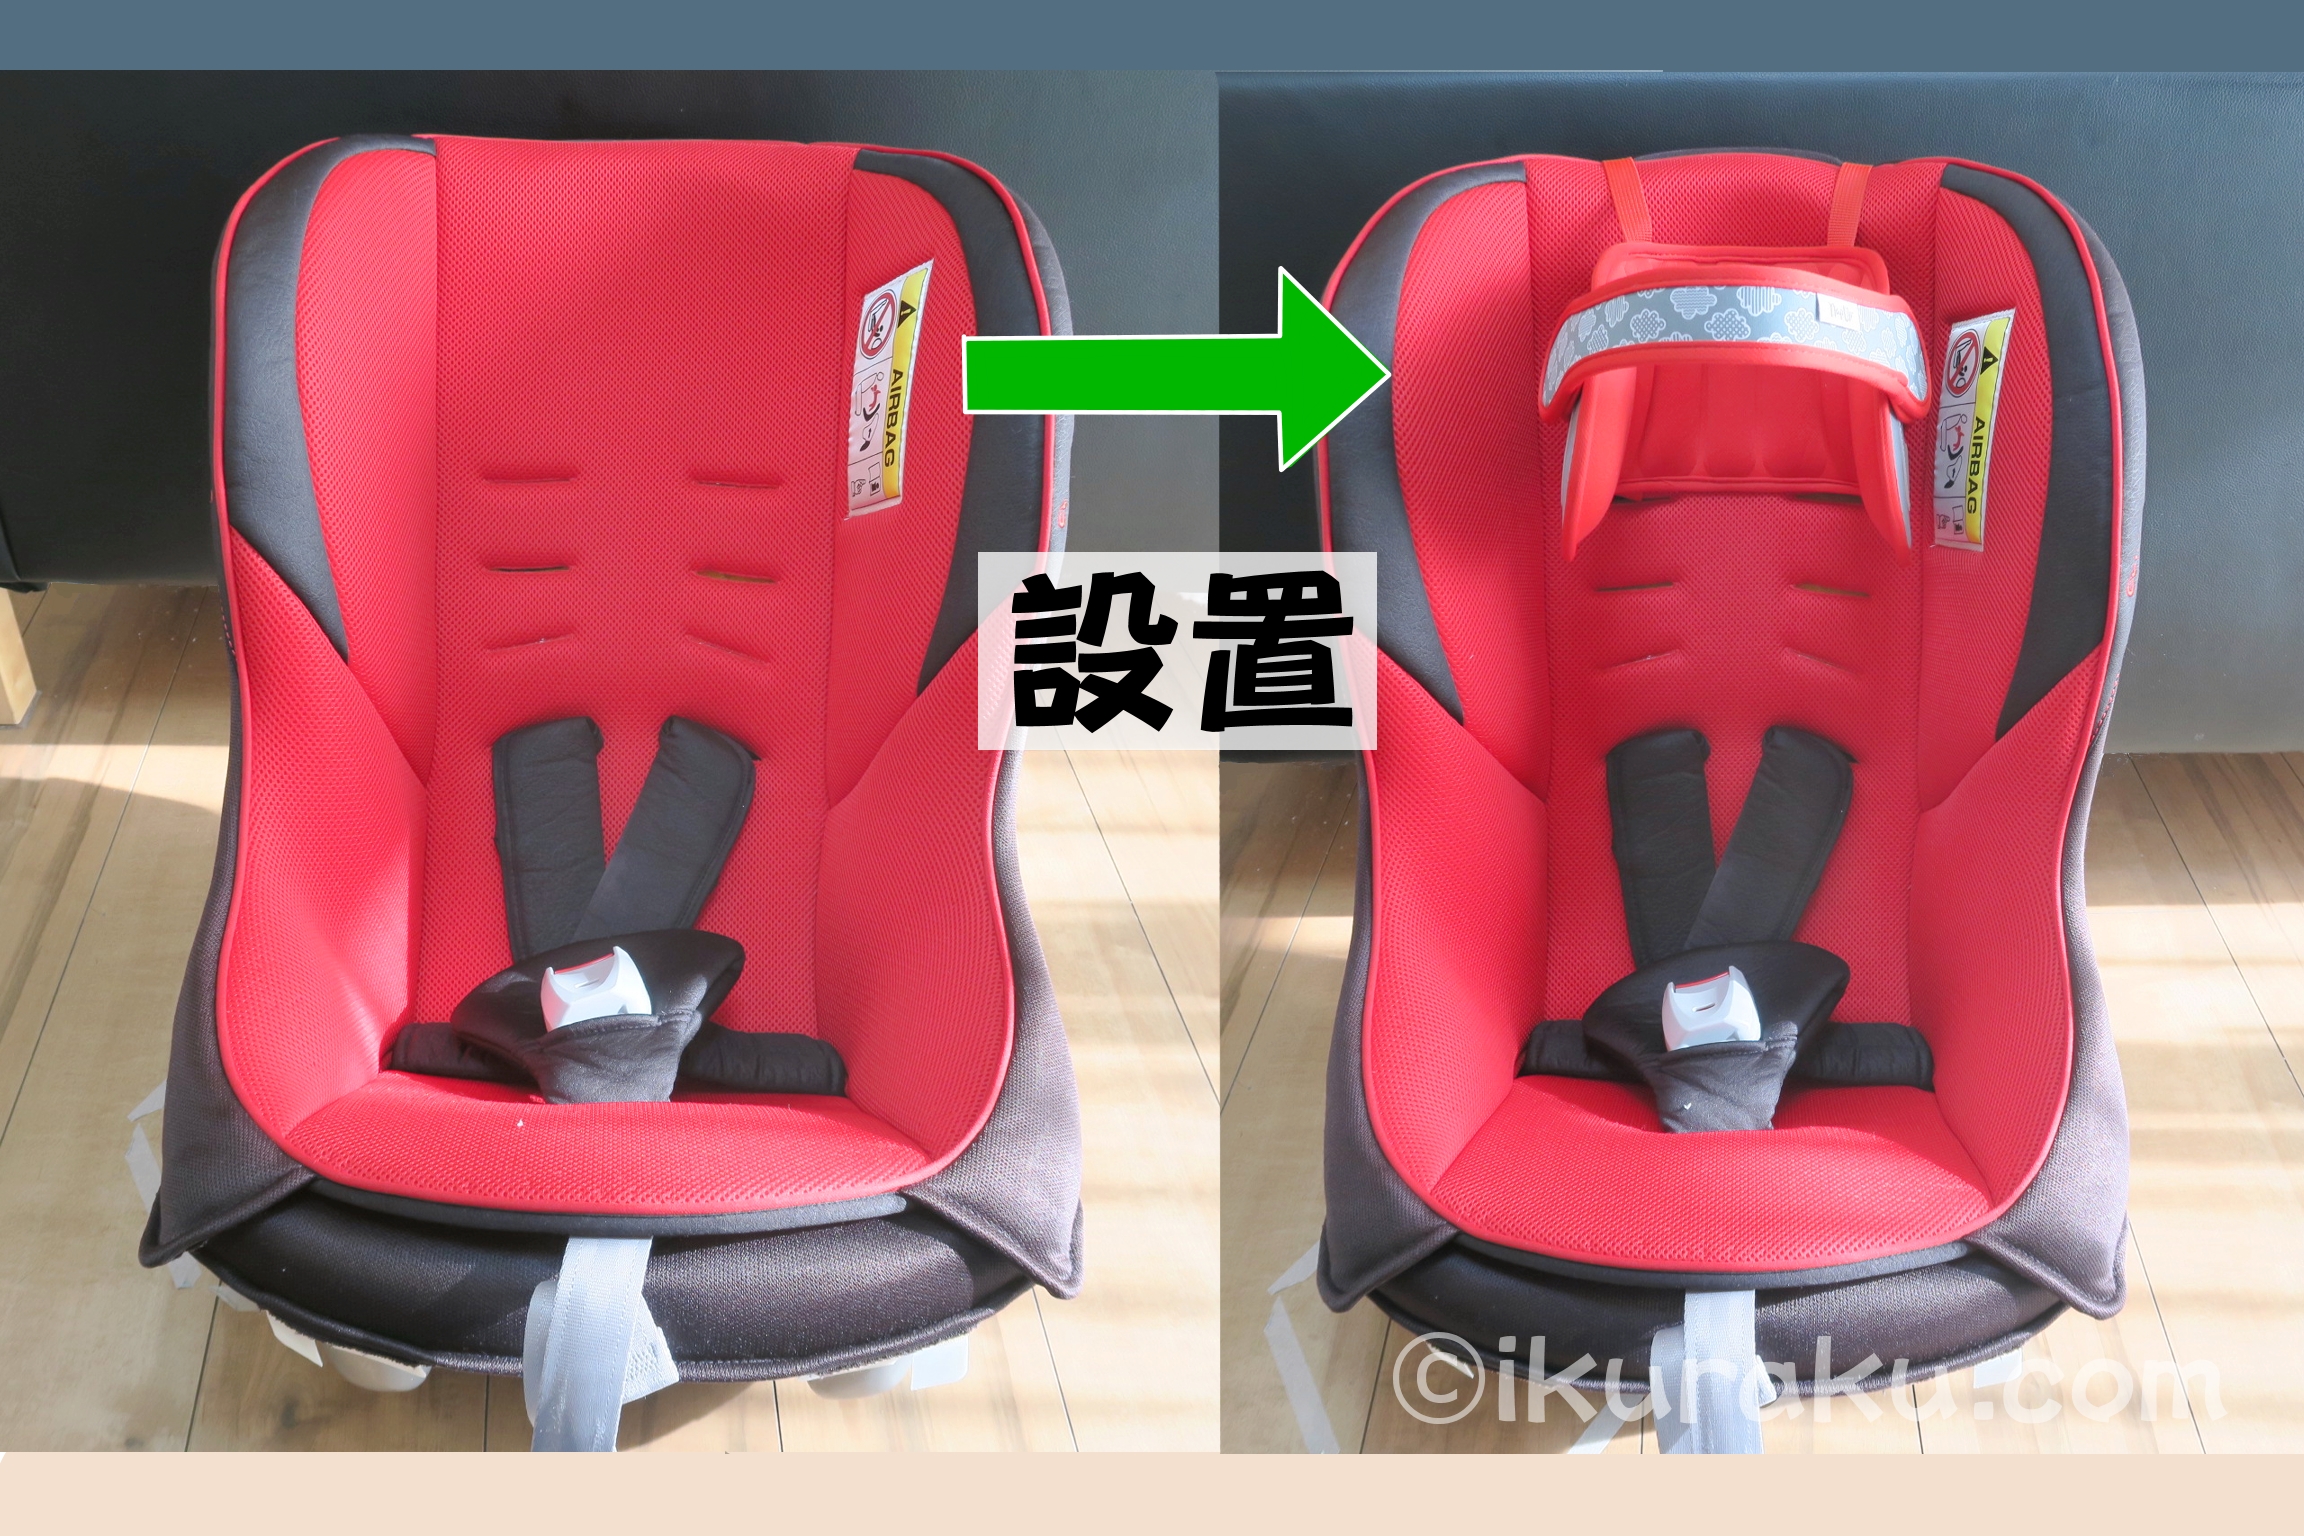 日本育児が輸入販売している「NapUpナップアップうたたねサポート」をコンビ（0～4歳用）のチャイルドシートに装着